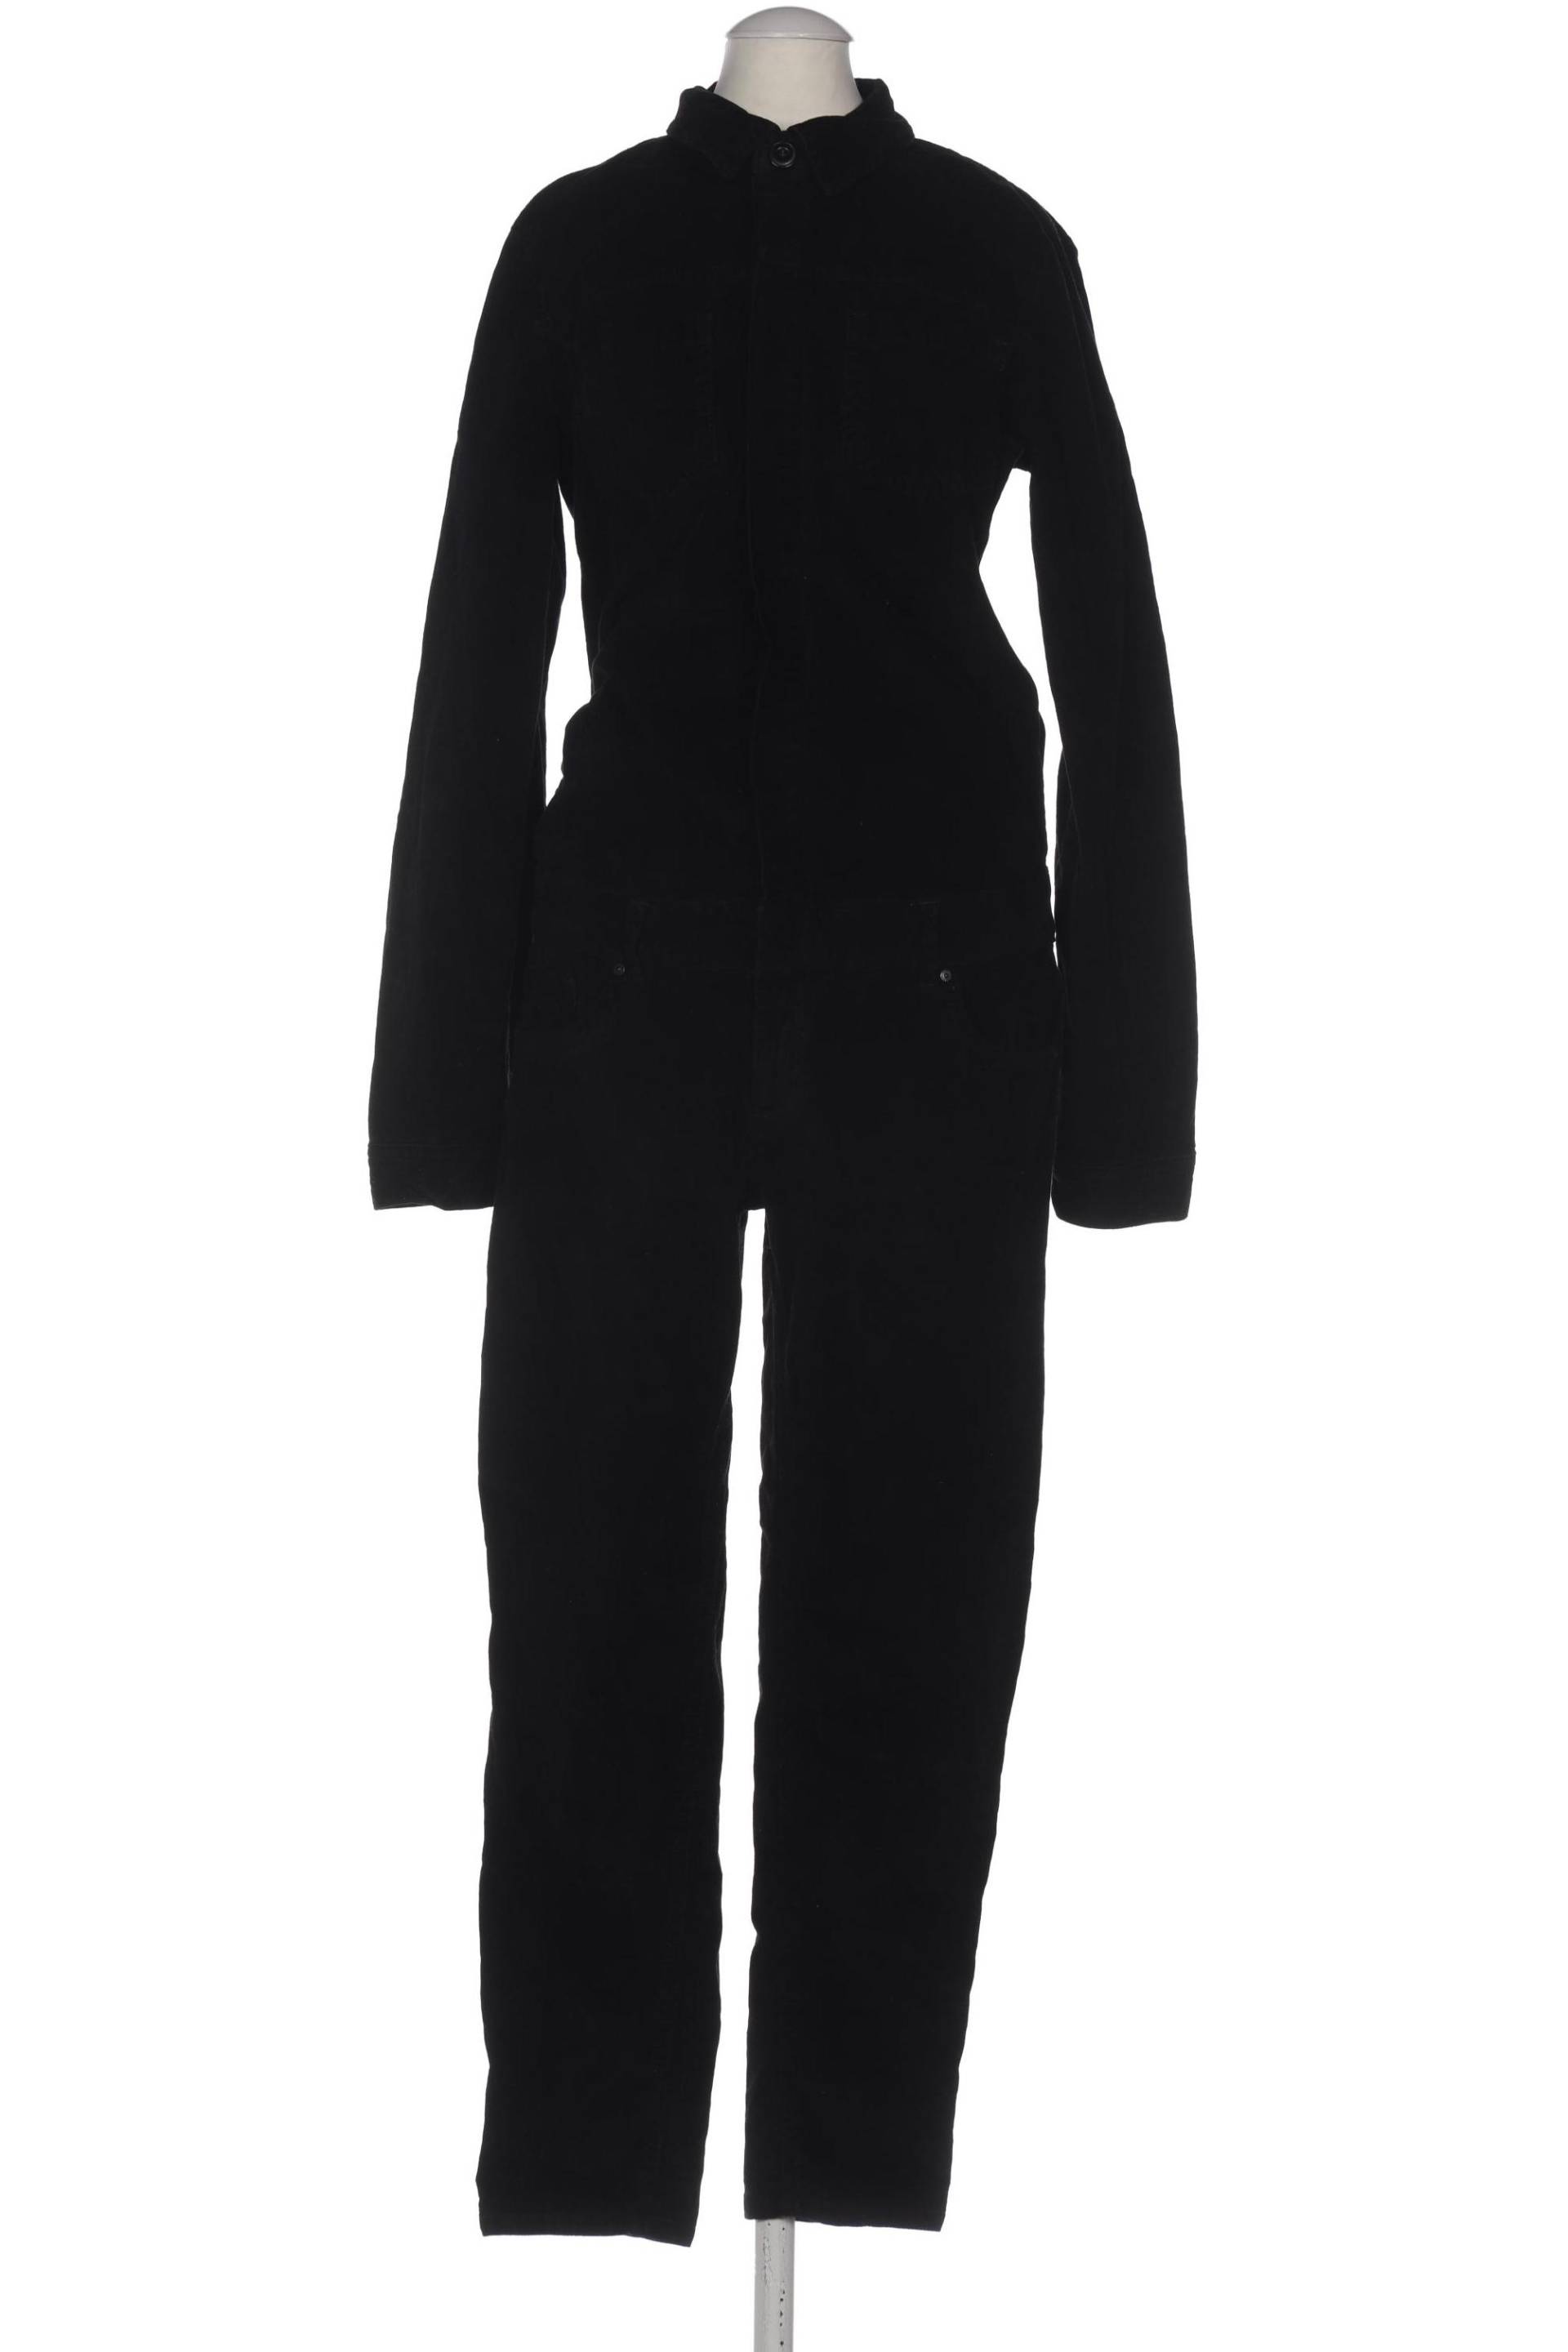 LTB Damen Jumpsuit/Overall, schwarz, Gr. 36 von LTB